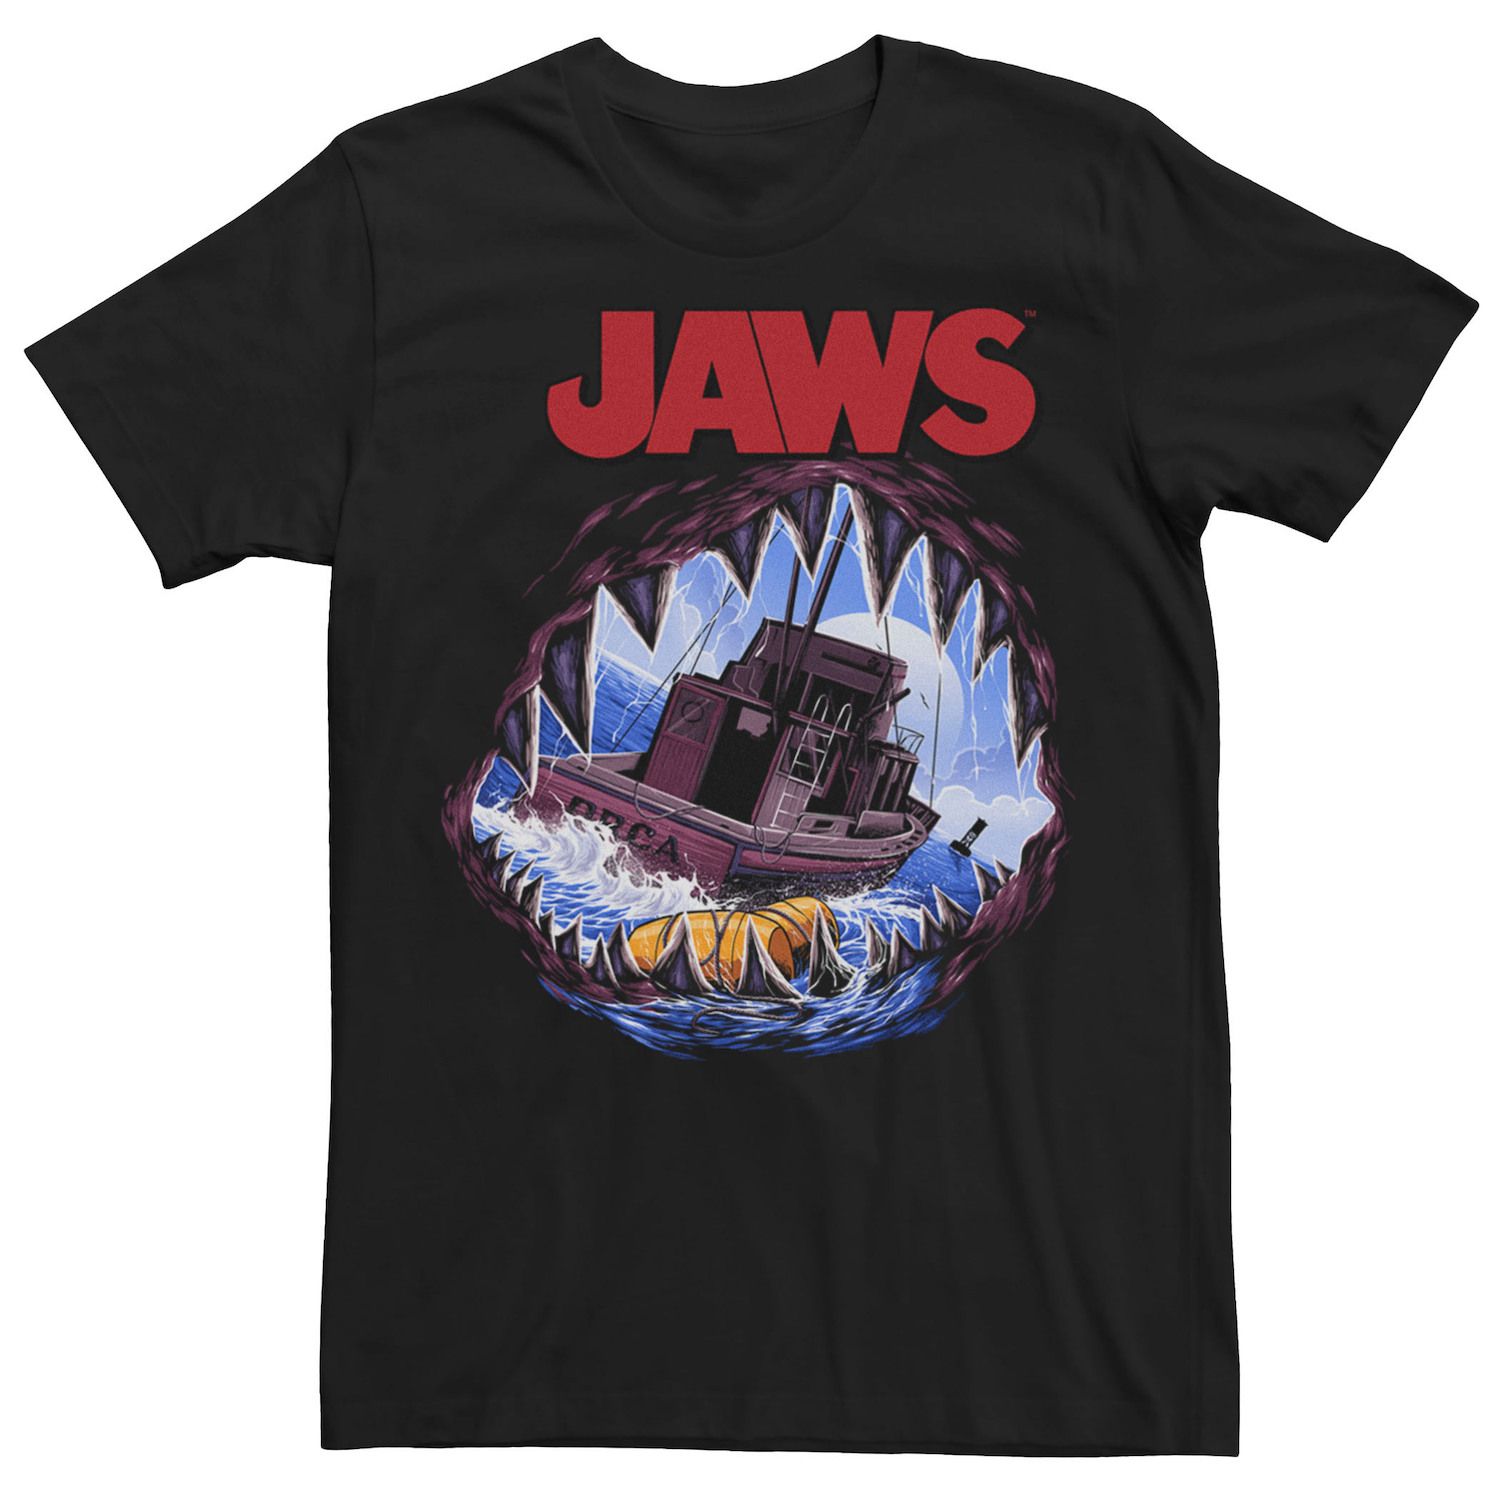 Мужская футболка с открытым ртом Jaws Licensed Character